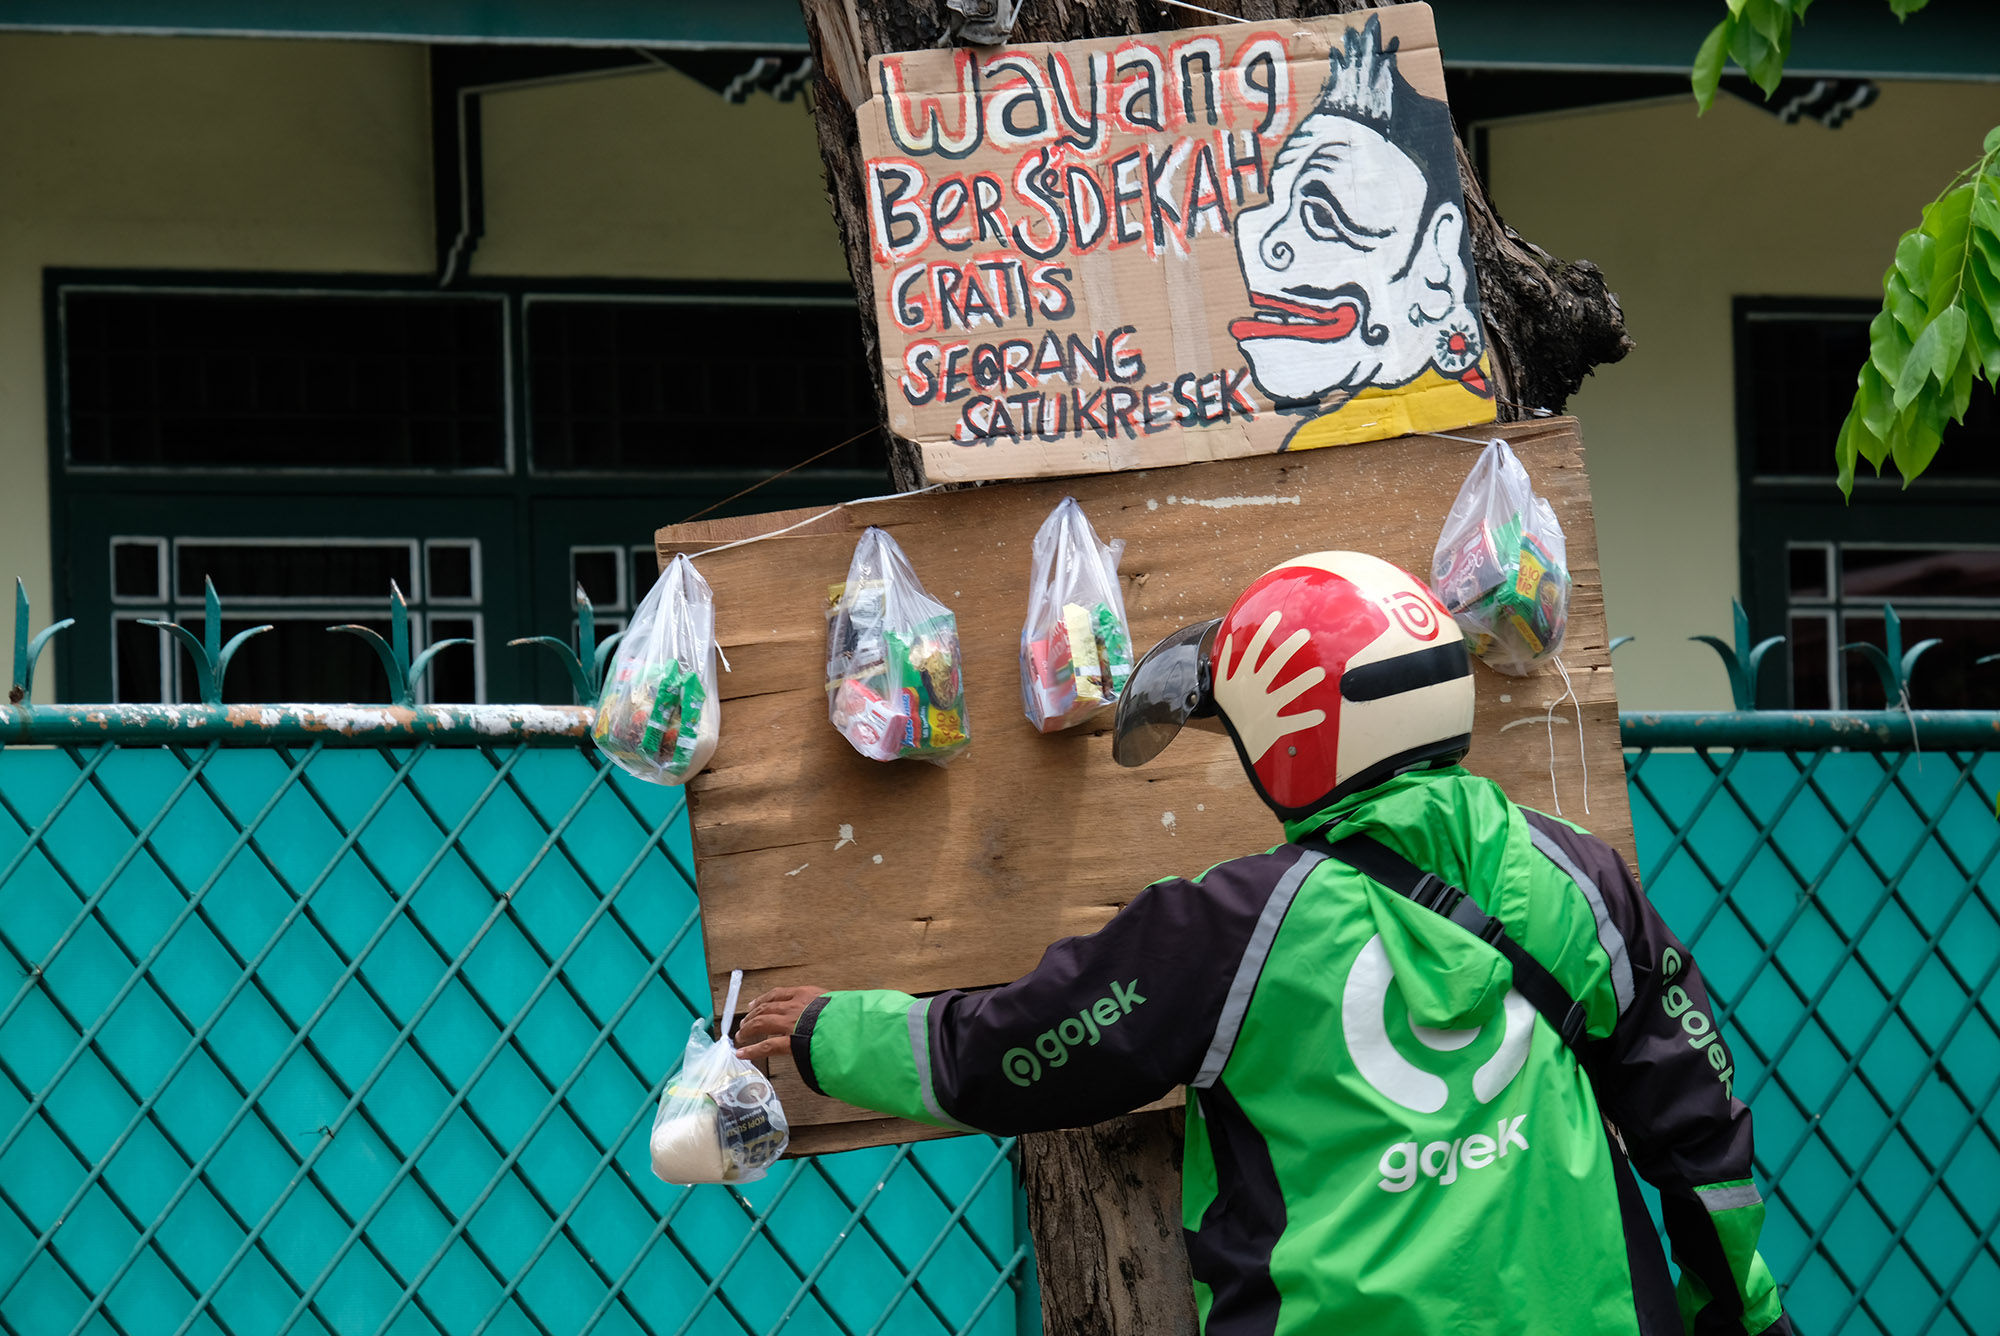 <p>Driver ojek online mengambil paket bahan makanan yang digantung di batang pohon di Jalan Cawang Baru Utara, Jakarta Timur, Kamis (16/4/2020). Aksi bertajuk &#8220;Wayang Bersedekah&#8221; ini merupakan inisiatif Iskandar dalam menanggapi kondisi pandemi corona. Bahan makanan yang dibagikan kepada warga di dapat dari hasil penjualan wayang berbahan sampah daur ulang. Dalam sehari rata-rata sebanyak 20 [&hellip;]</p>
